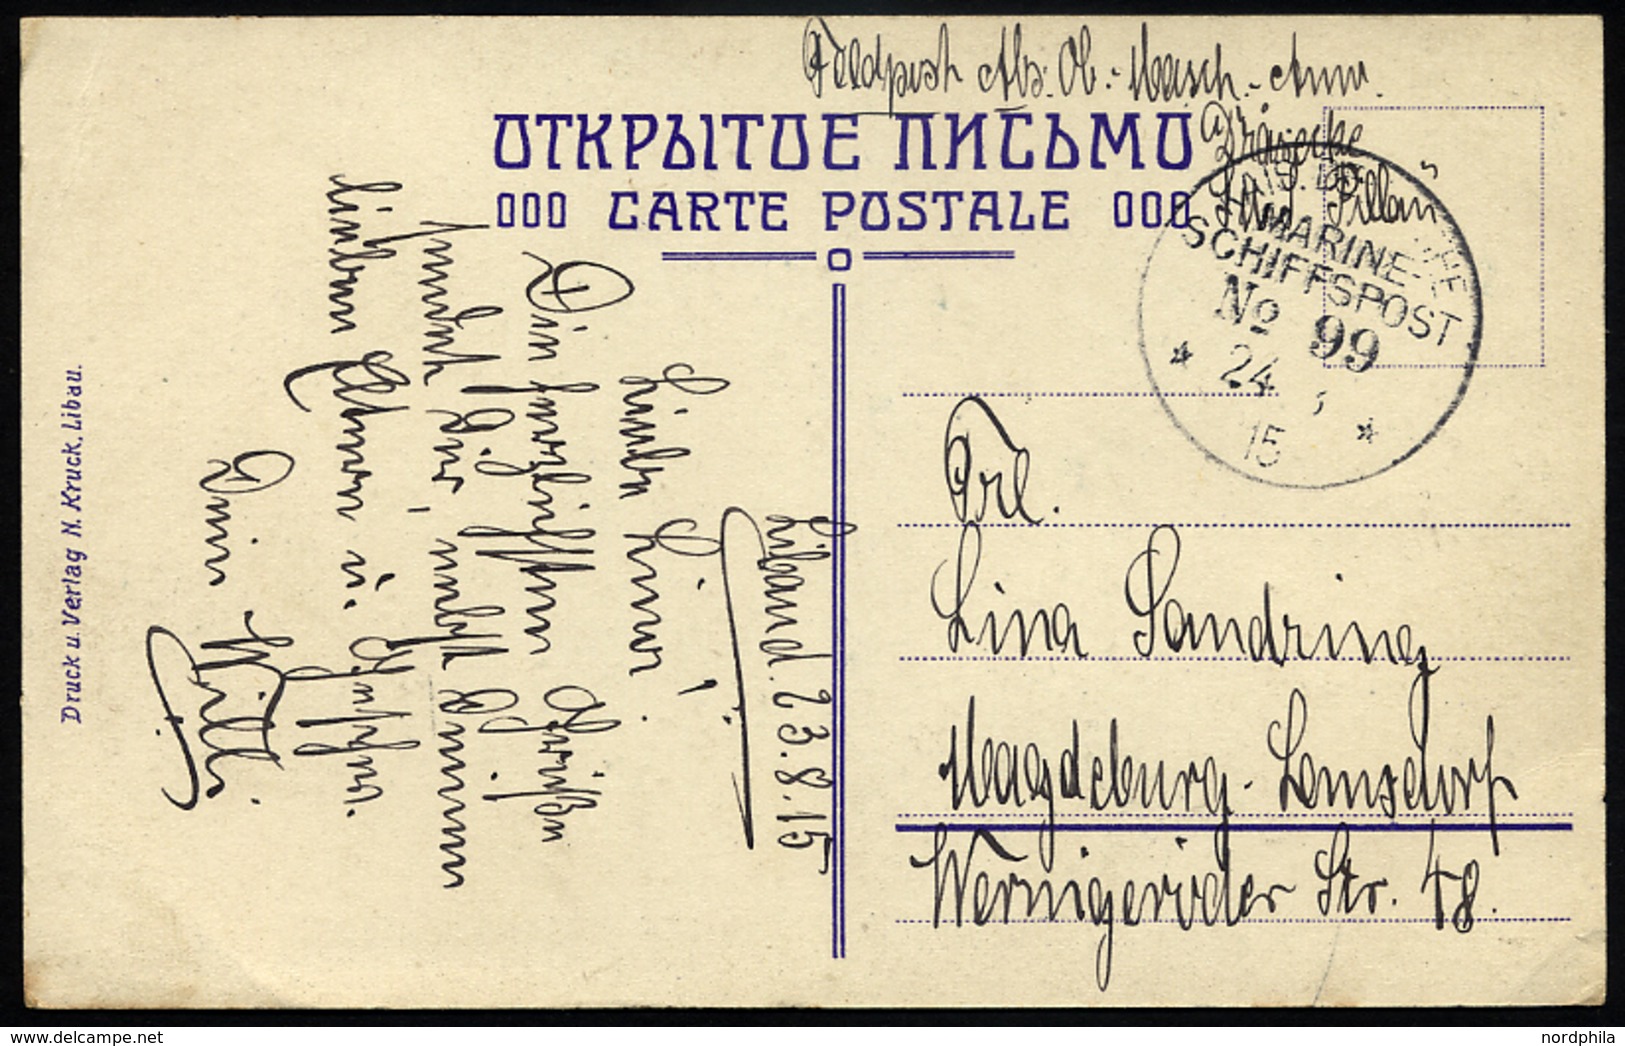 MSP VON 1914 - 1918 99 (Kleiner Kreuzer PILLAU), 24.8.1915, Feldpost-Ansichtskarte Von Bord Der Pillau, Pracht - Marittimi